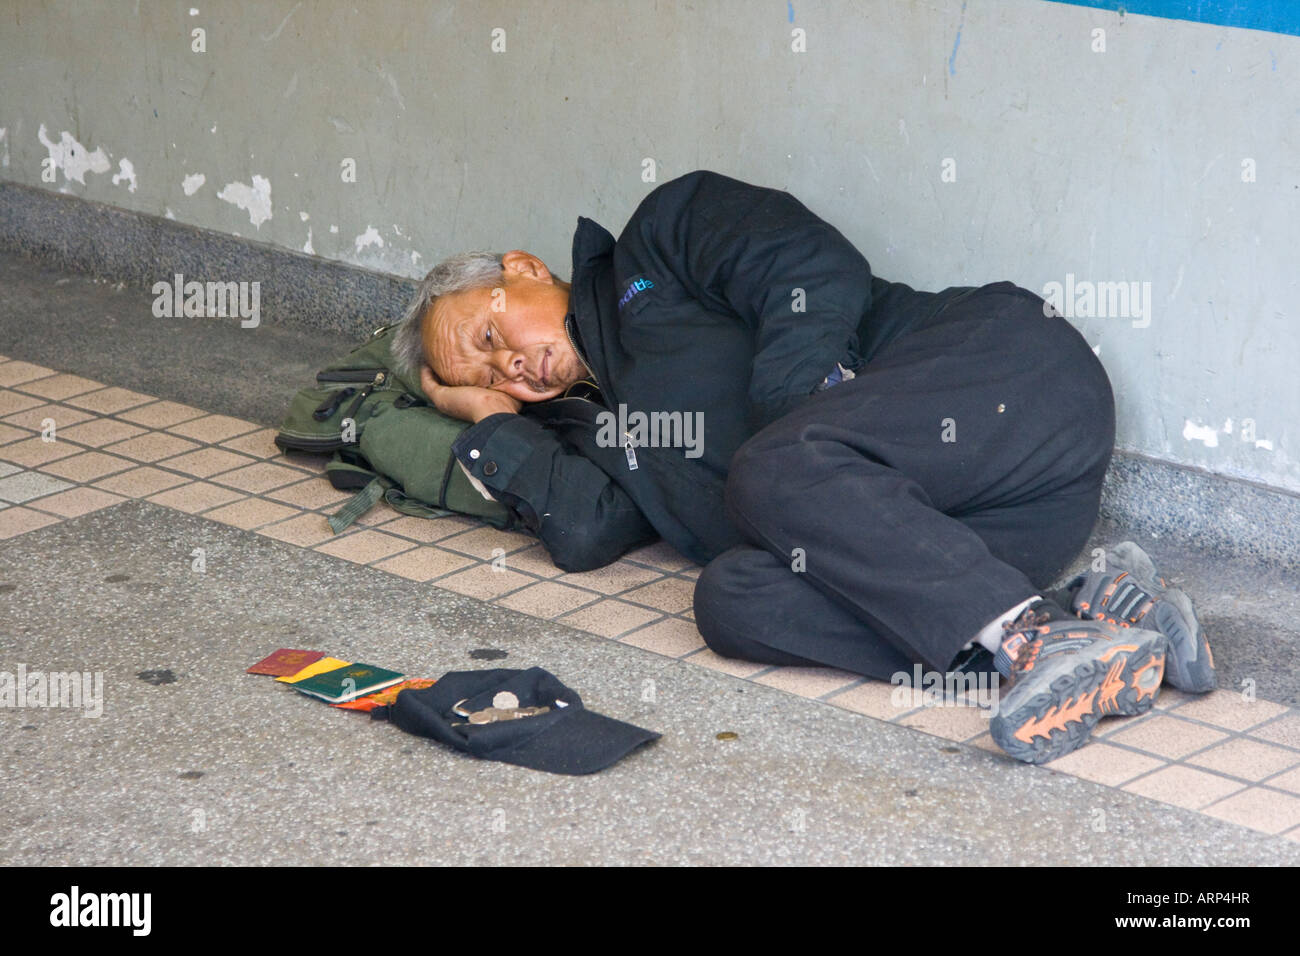 Homeless Beggar in Hong Kong Stock Photo